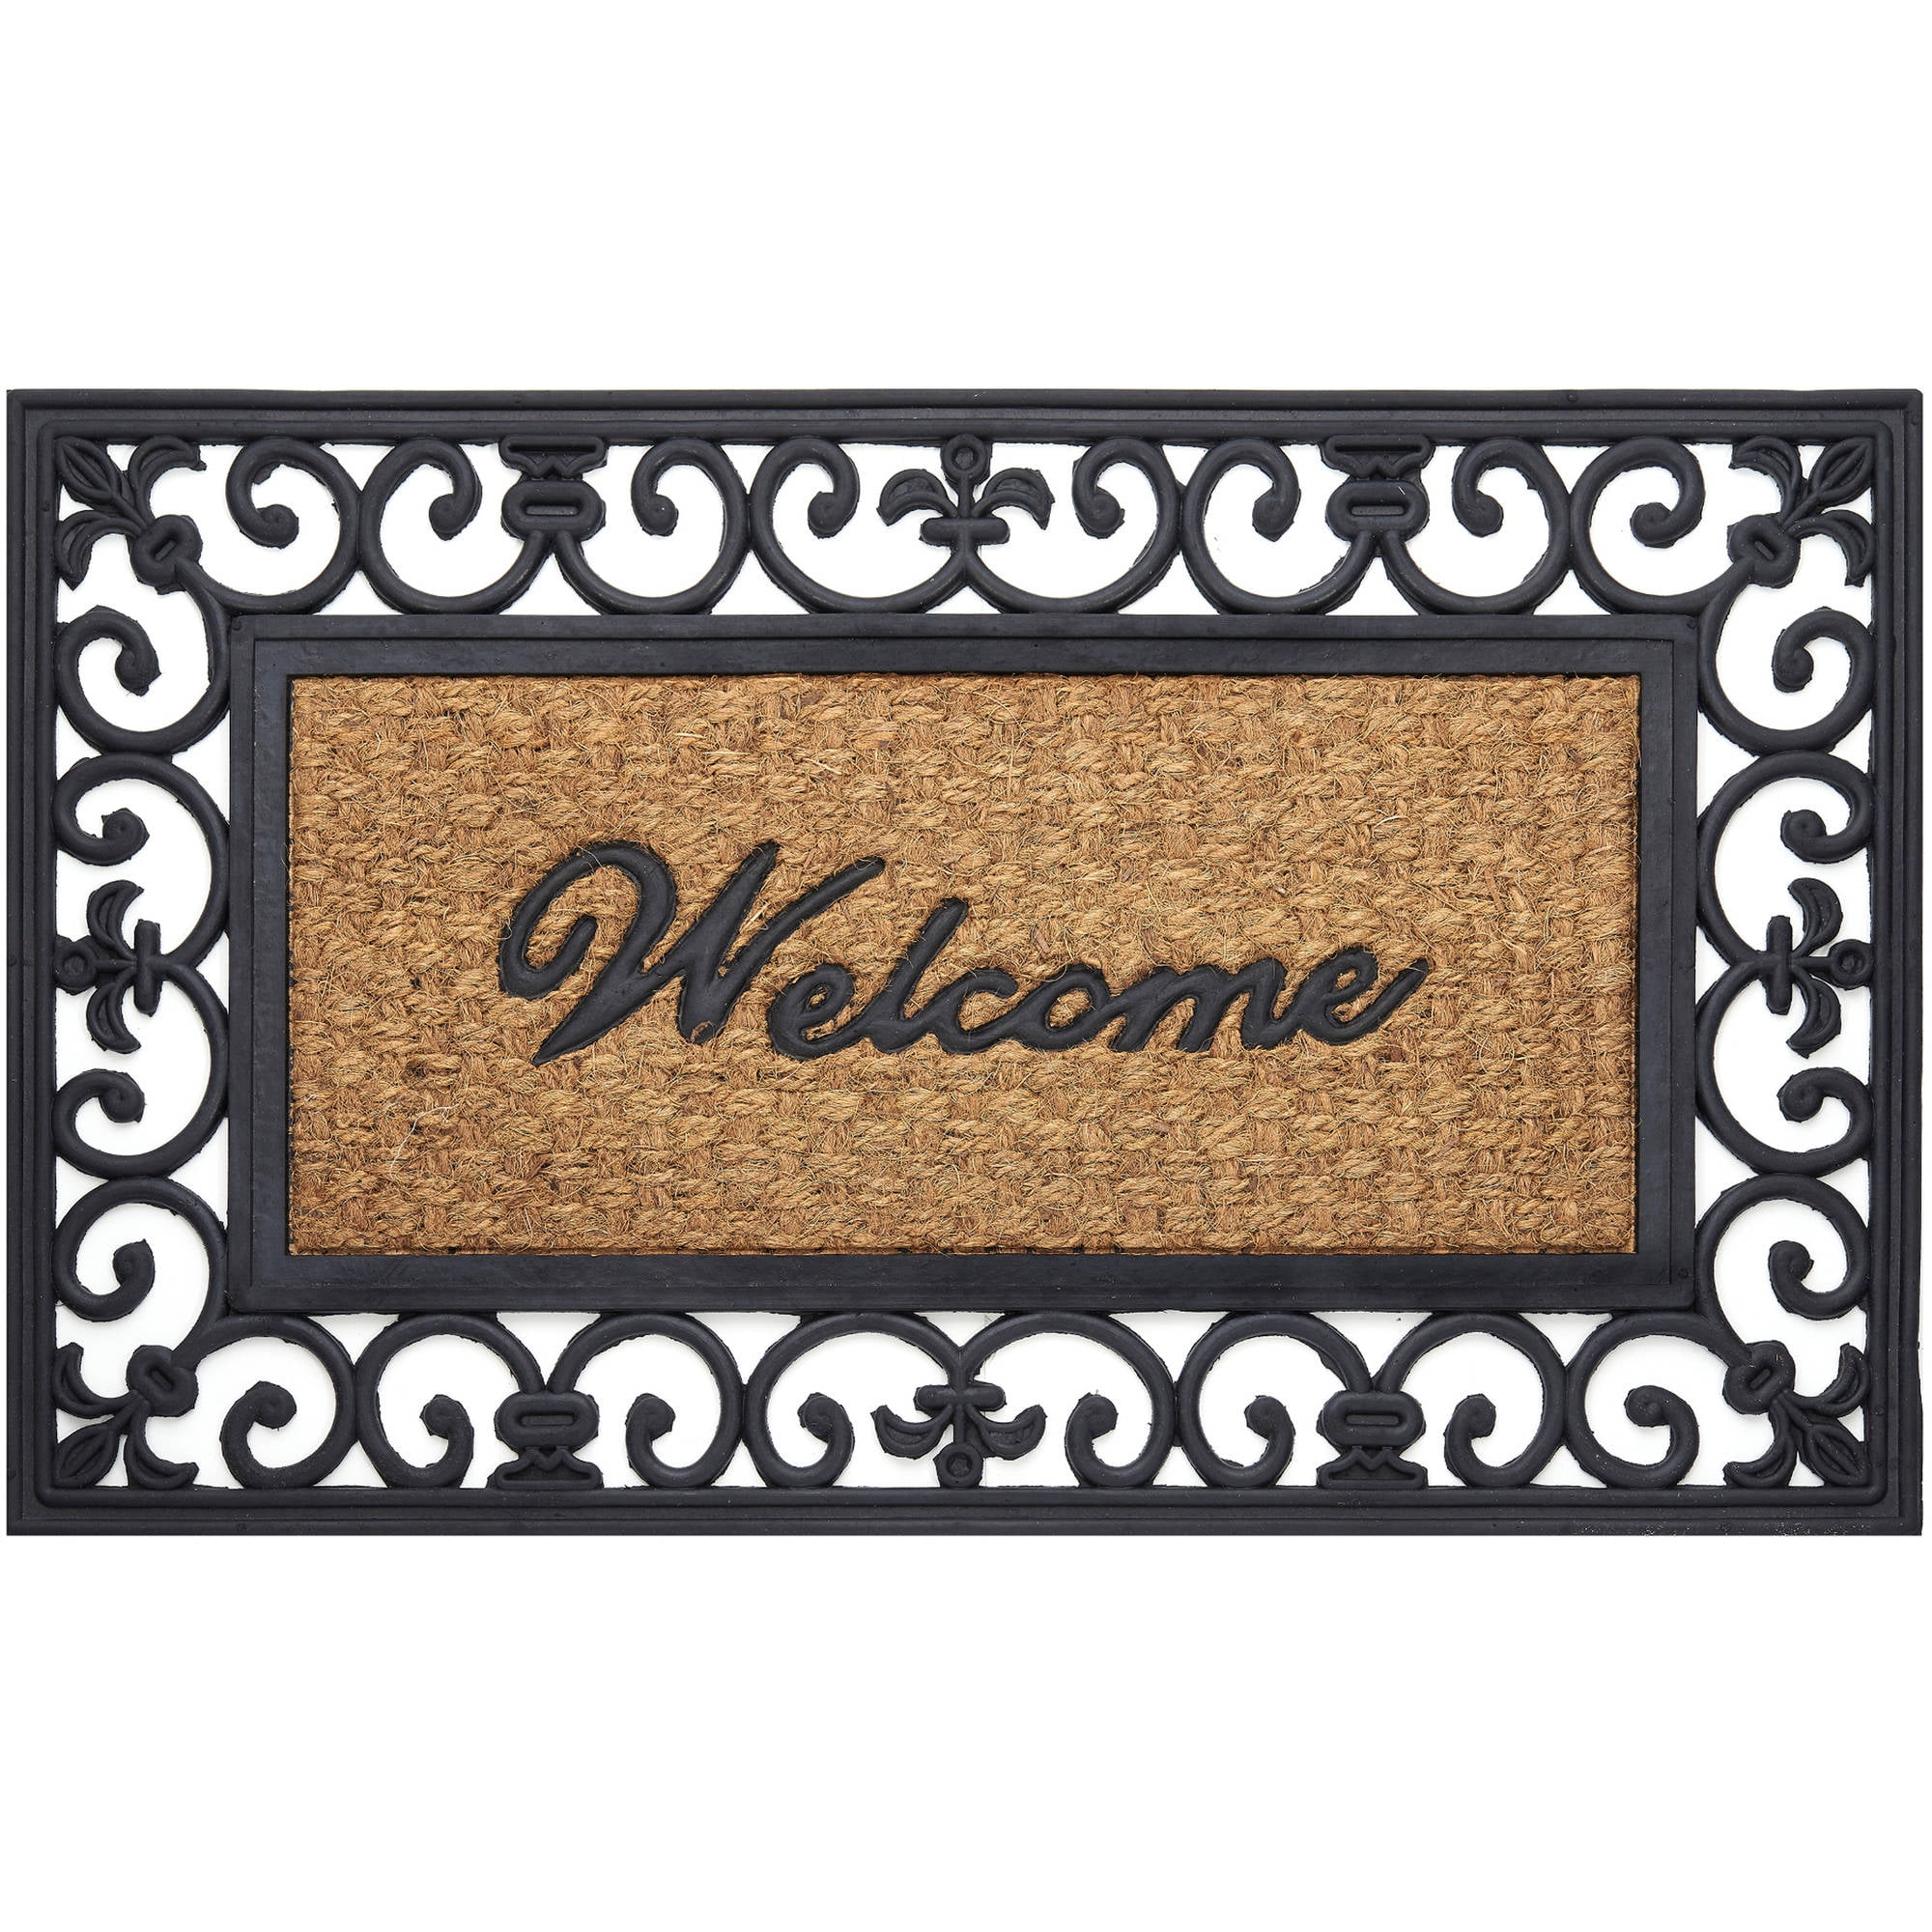 Premium Outdoor Coir Decorative Rubber Doormat 18 x 30-Inch